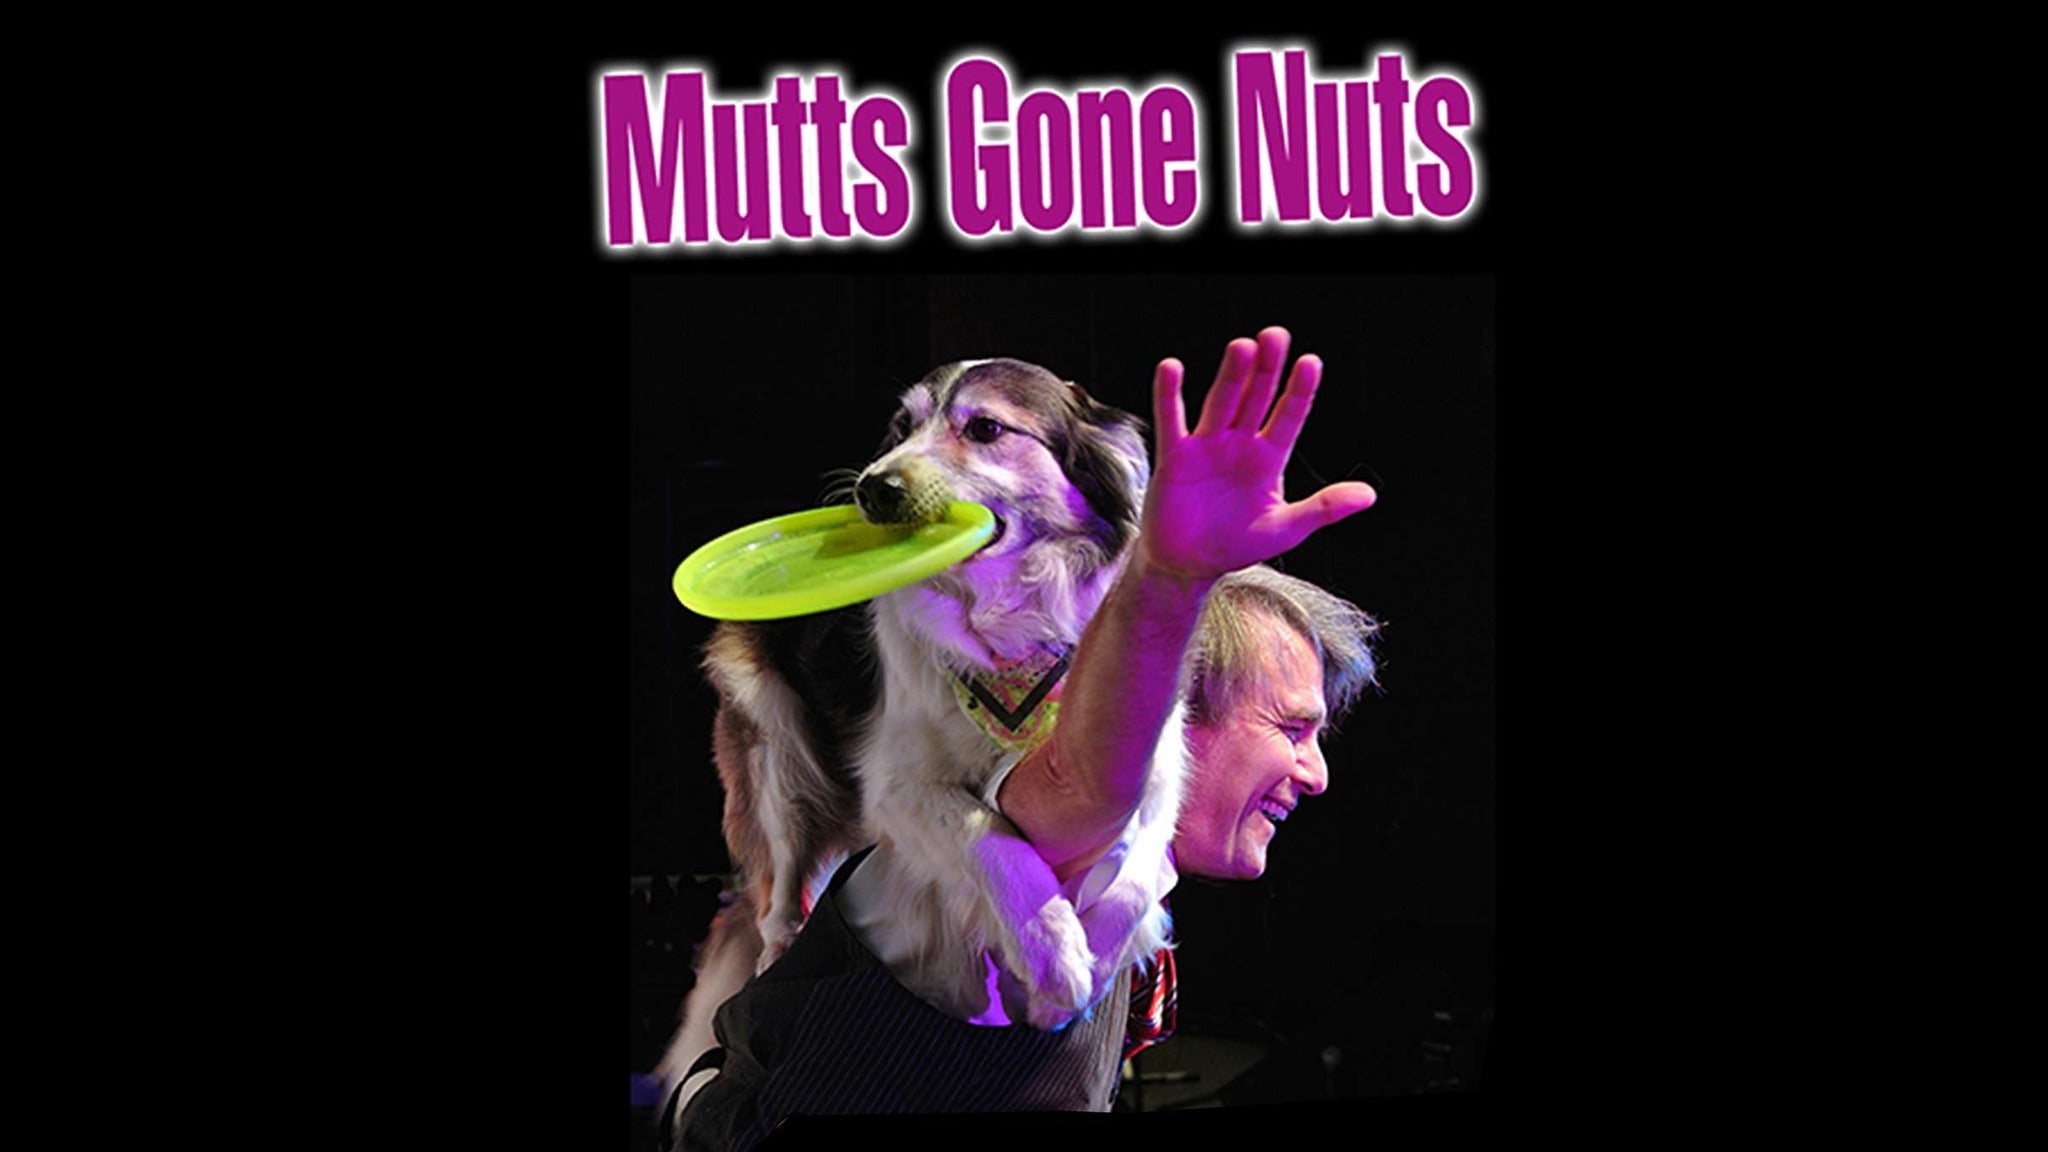 Mutts Gone Nuts presale information on freepresalepasswords.com